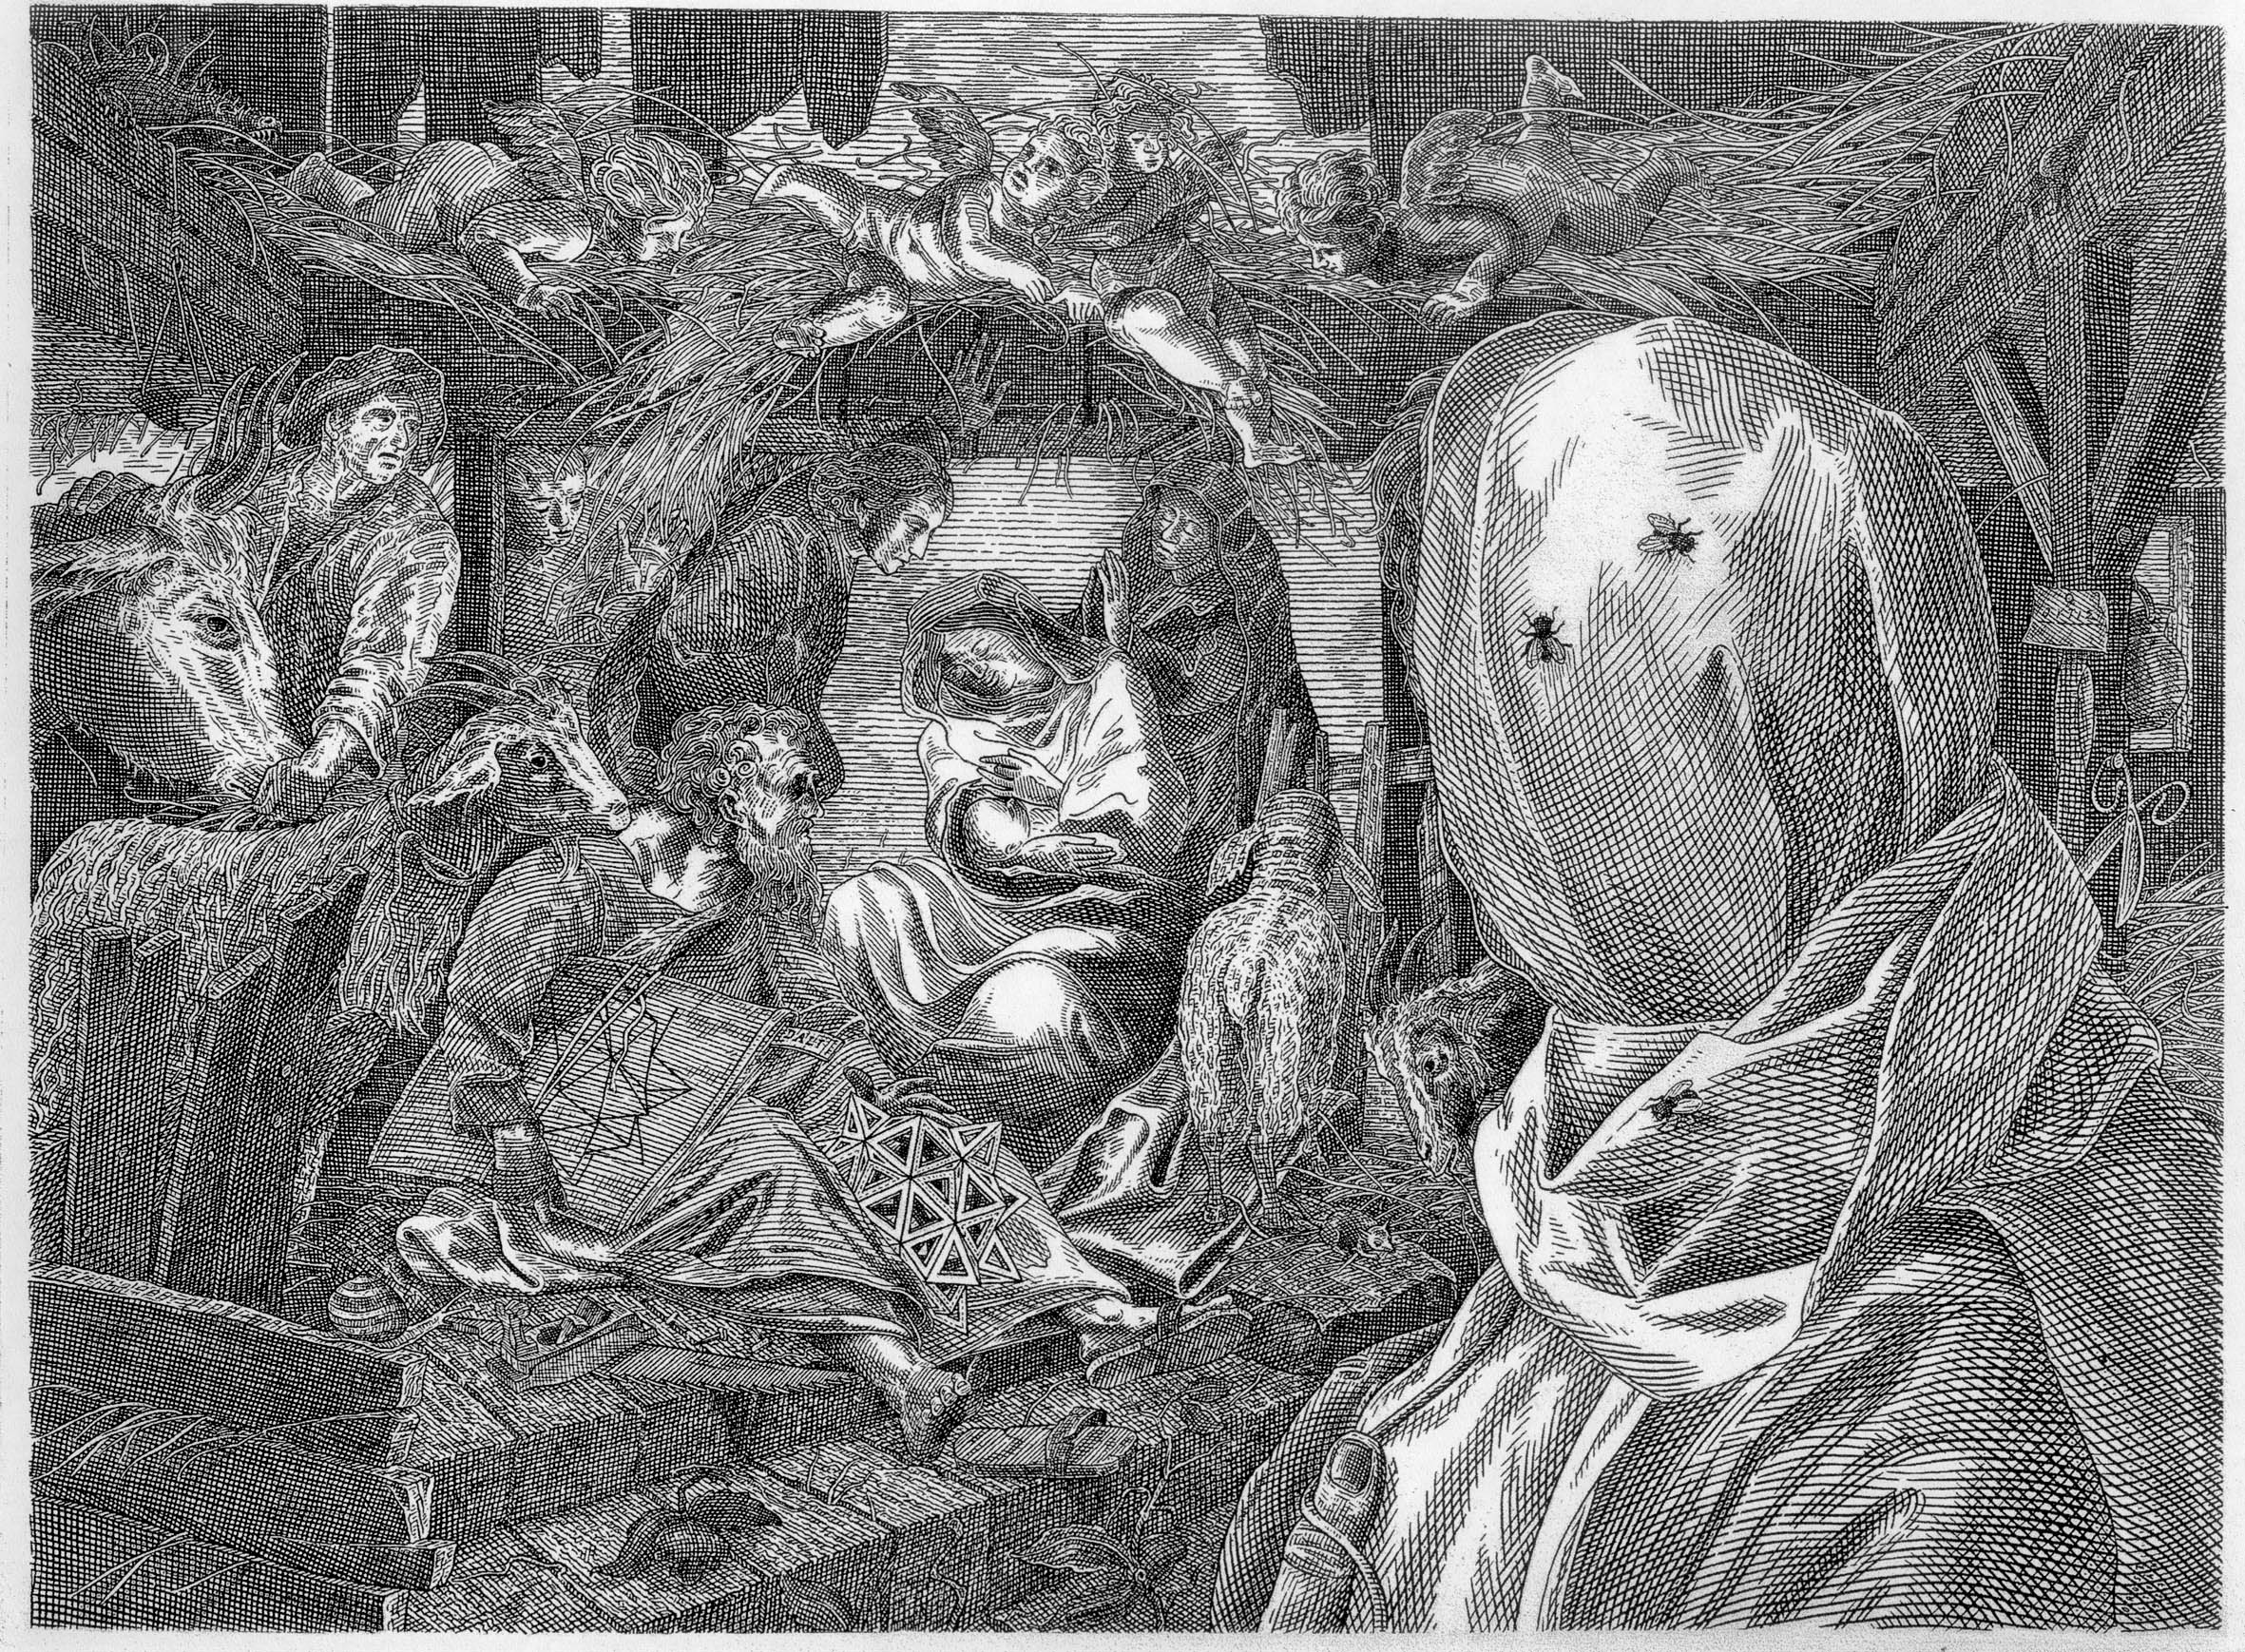 Orosz, István: Dalí and the holy family